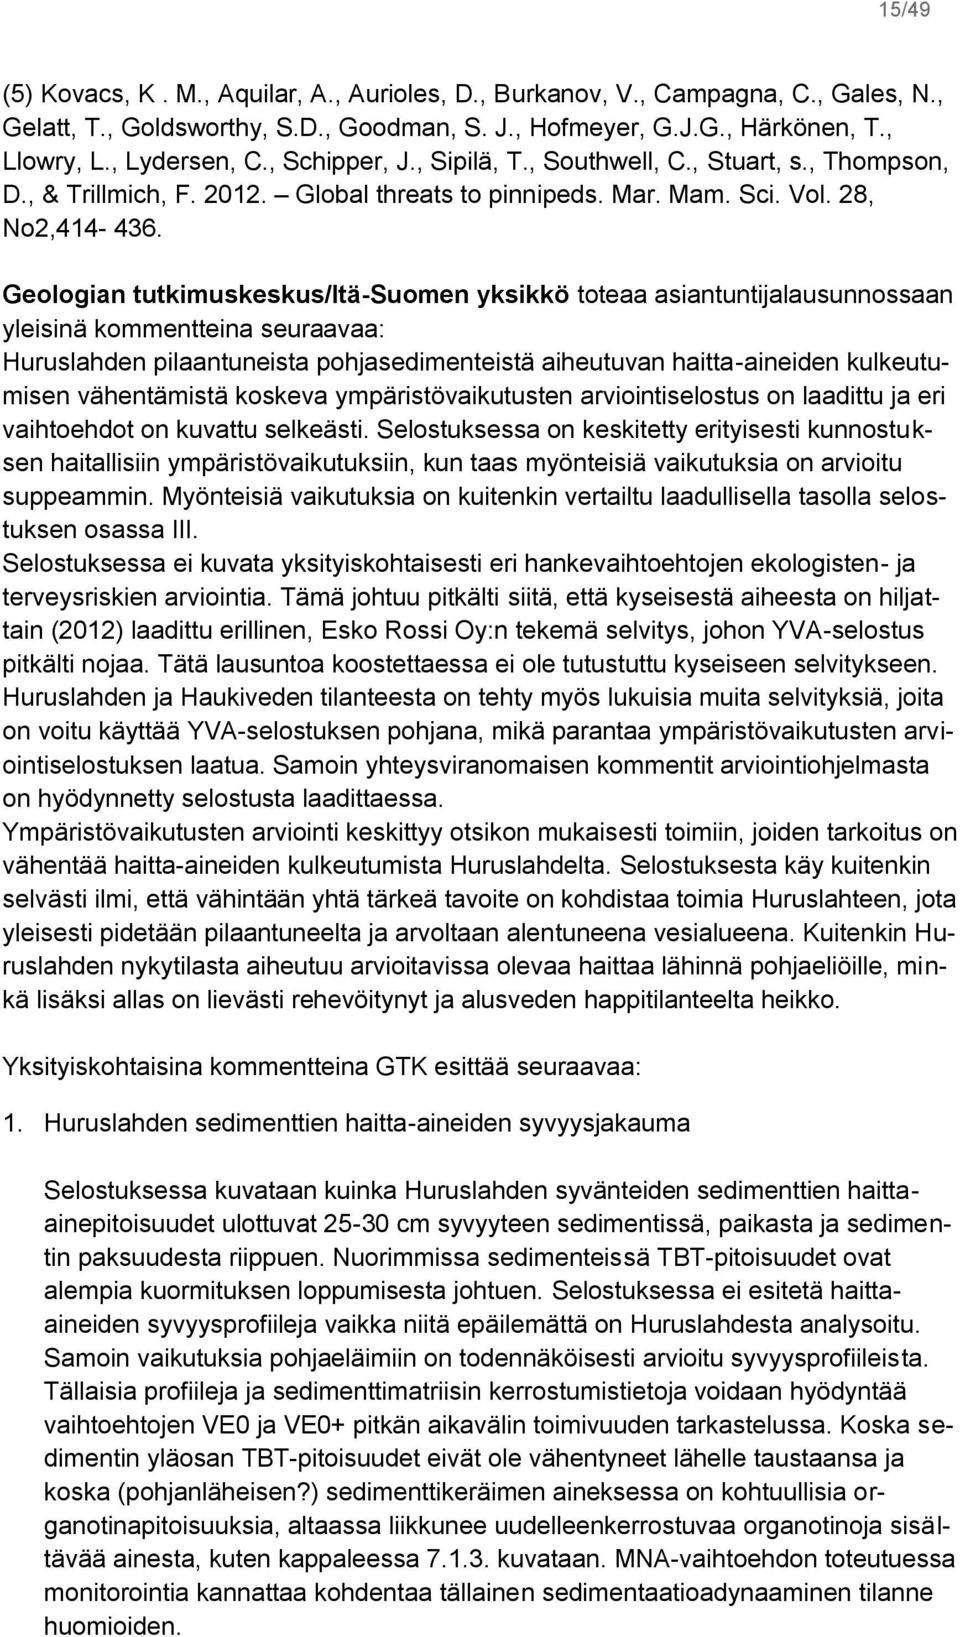 Geologian tutkimuskeskus/itä-suomen yksikkö toteaa asiantuntijalausunnossaan yleisinä kommentteina seuraavaa: Huruslahden pilaantuneista pohjasedimenteistä aiheutuvan haitta-aineiden kulkeutumisen